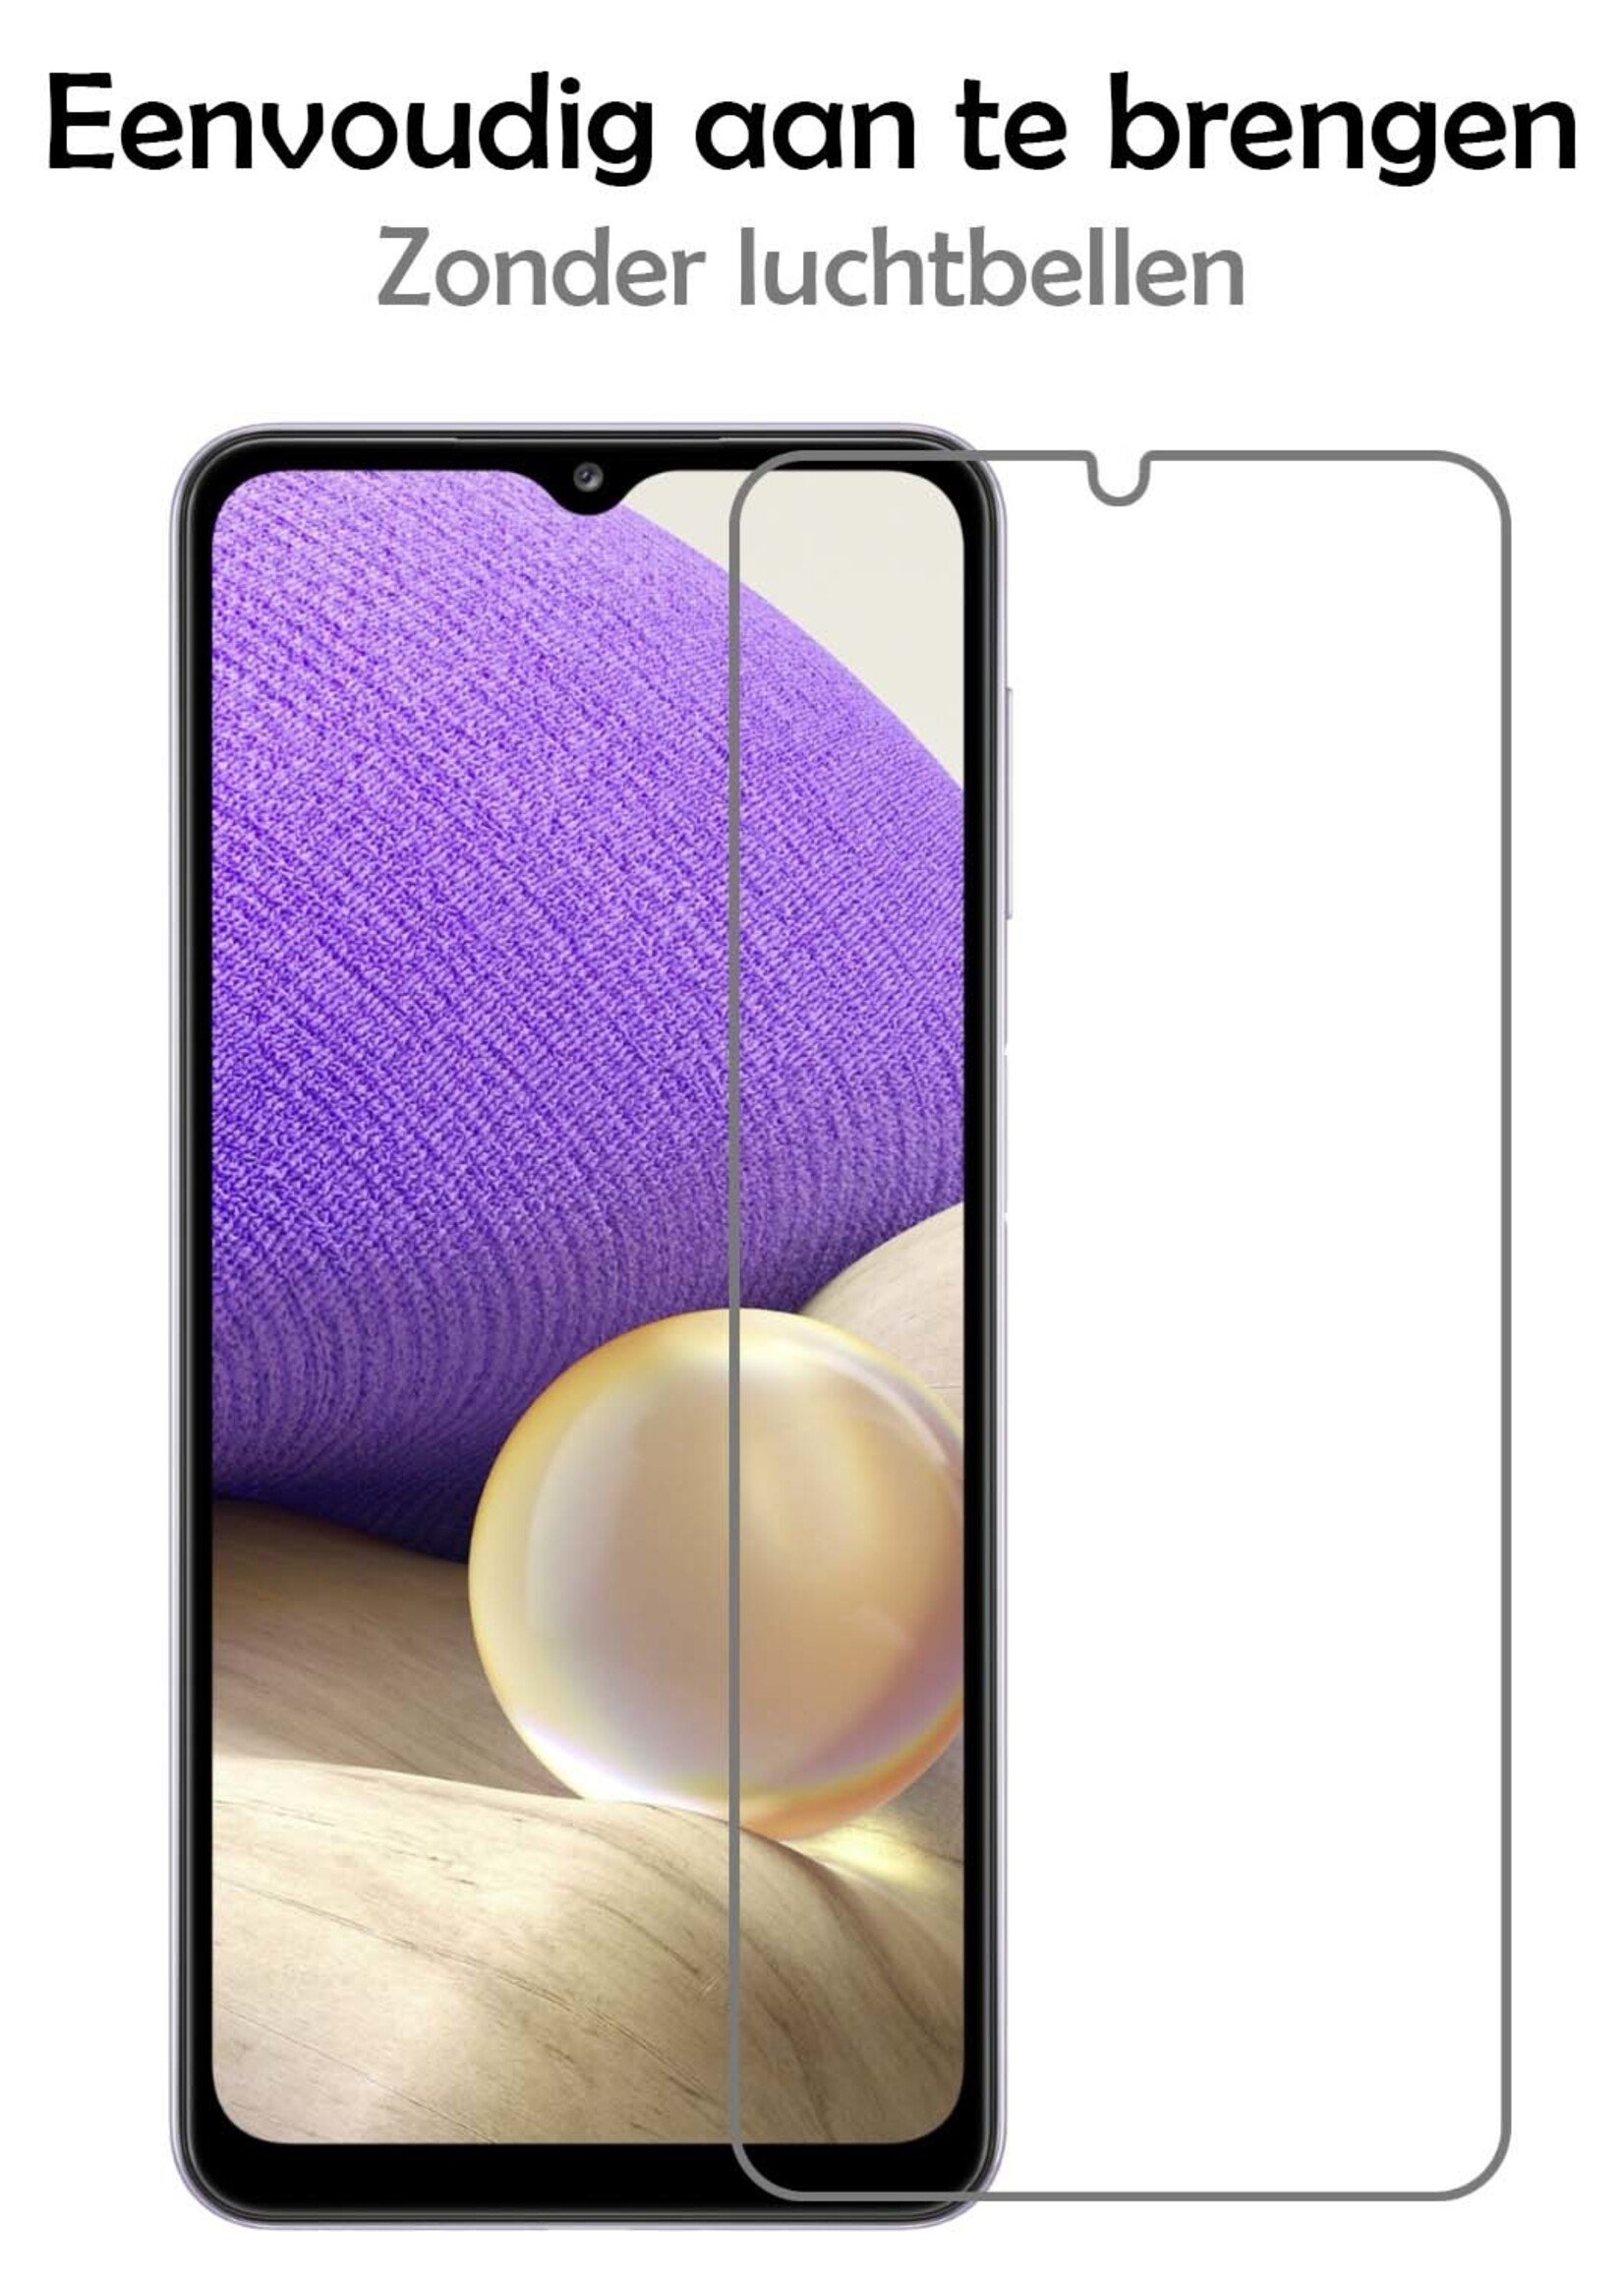 LUQ Hoesje Geschikt voor Samsung A32 4G Hoesje Siliconen Case Met 2x Screenprotector - Hoes Geschikt voor Samsung Galaxy A32 4G Hoes Siliconen - Rood